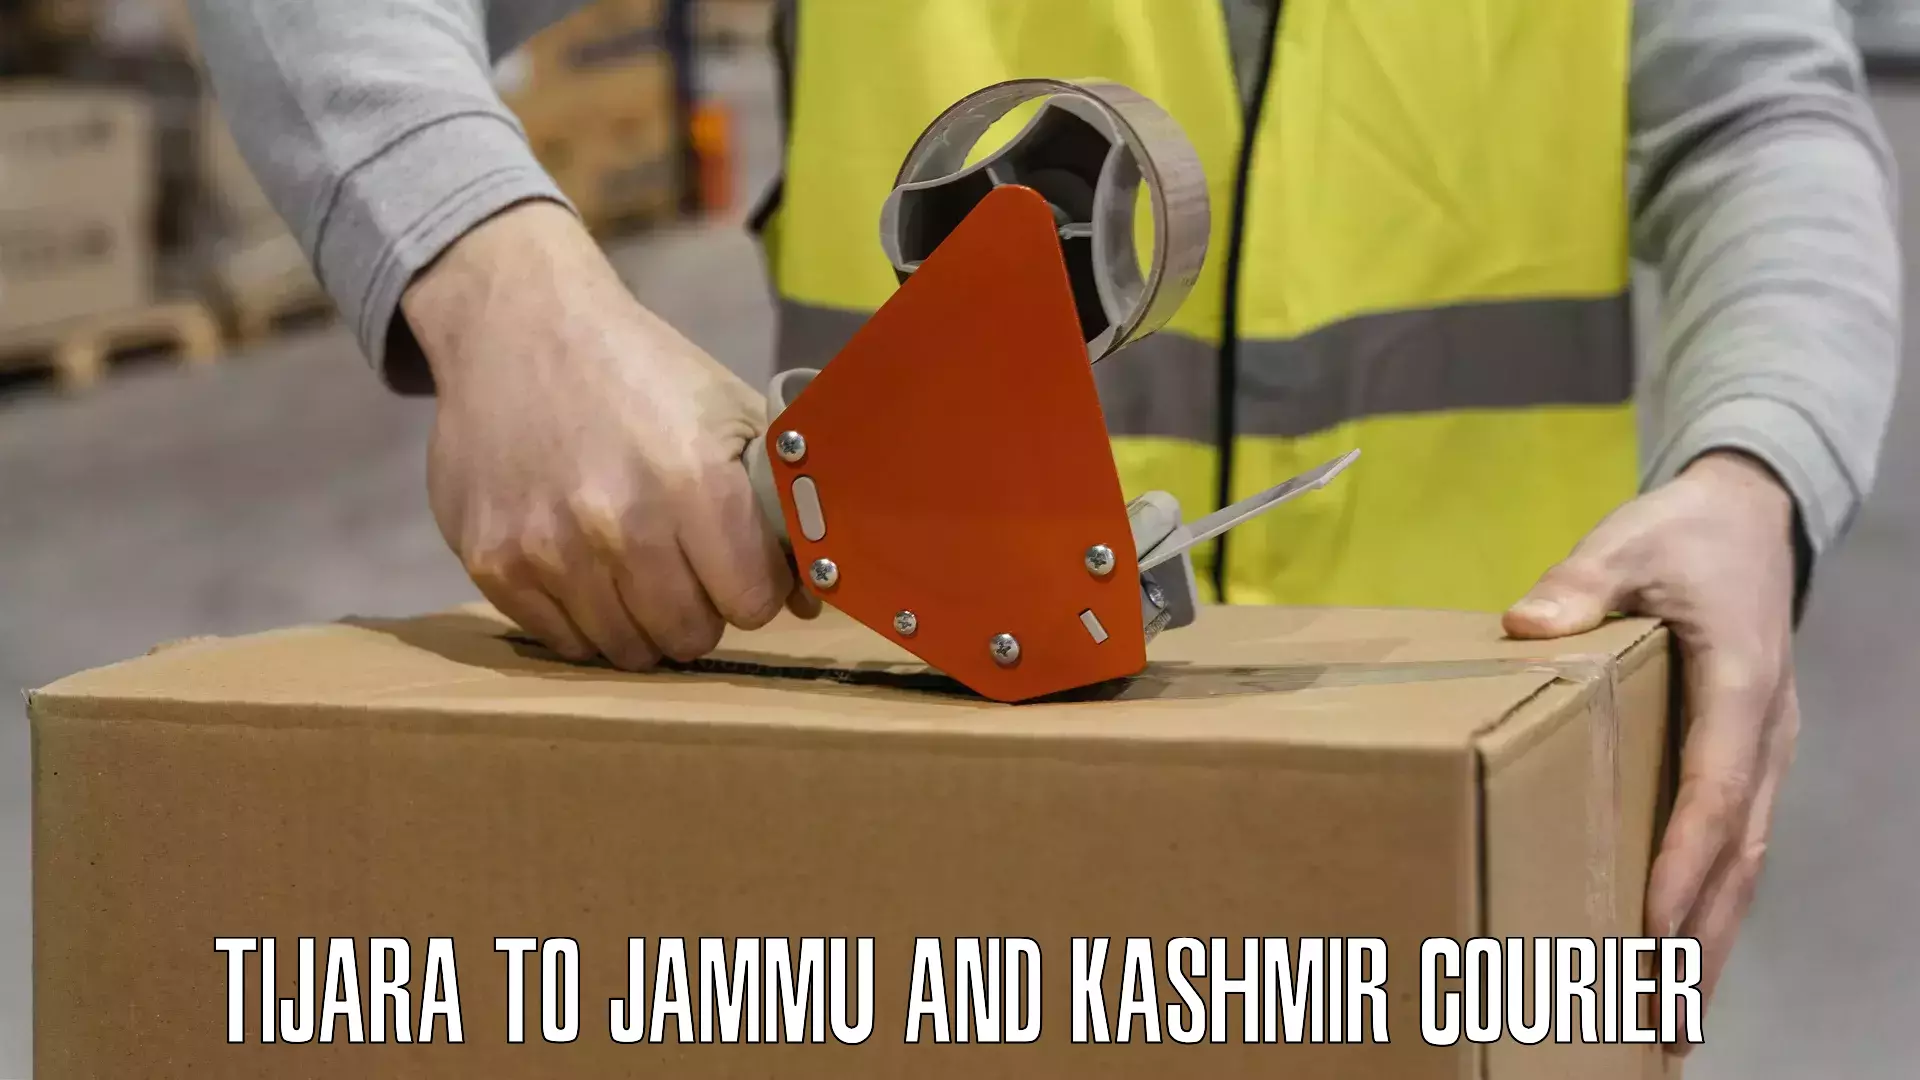 Courier service innovation Tijara to Jammu